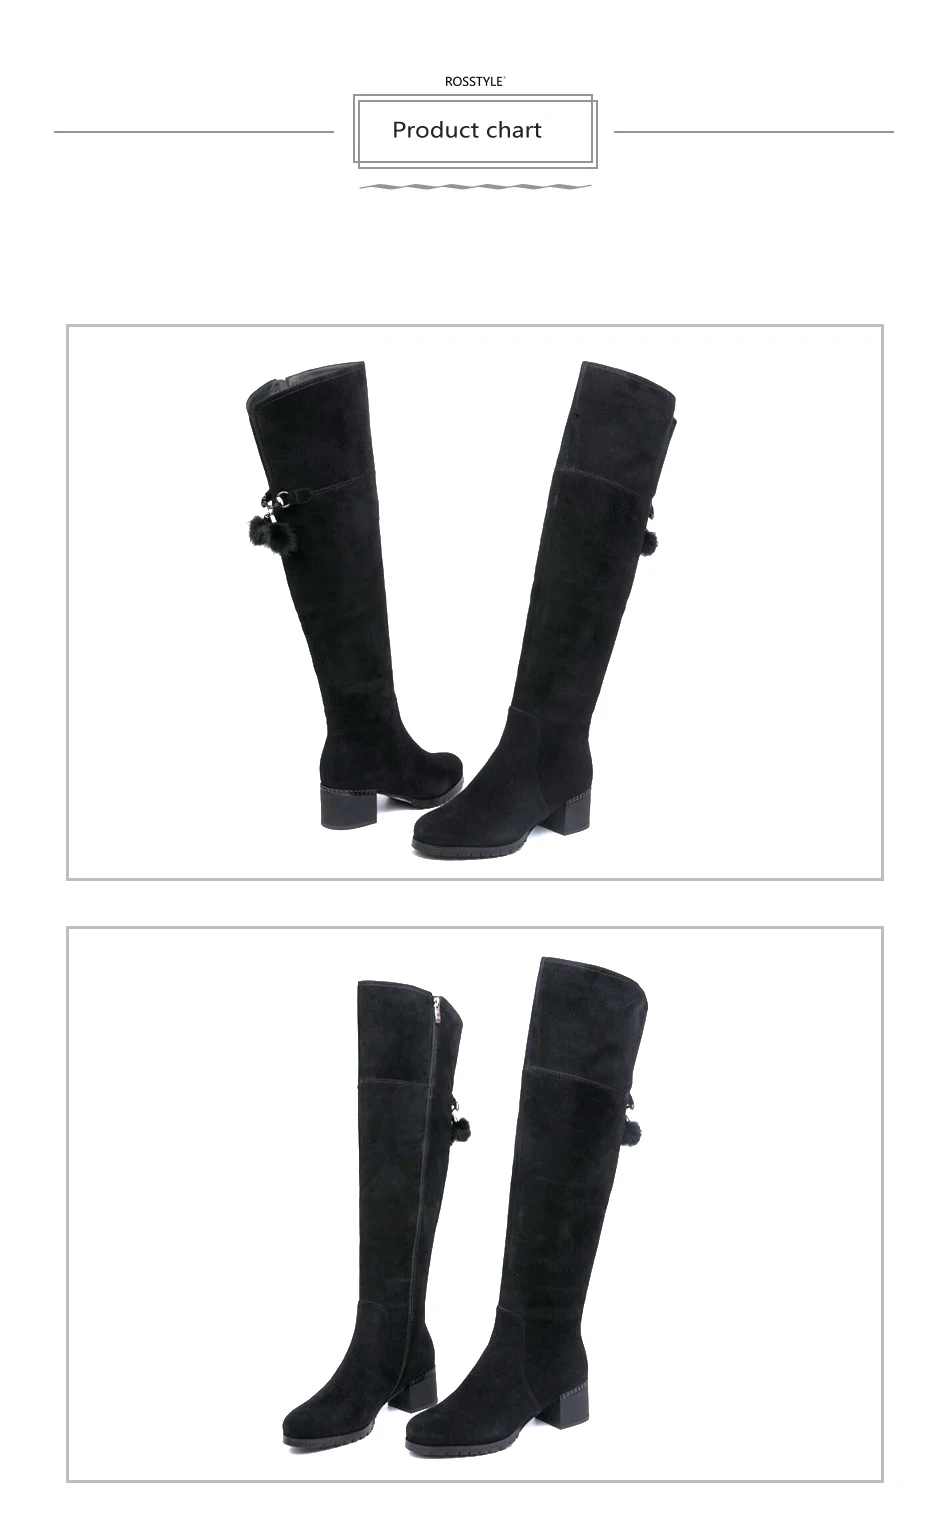 ROSSTYLE/ г. узкие сапоги пикантные женские зимние сапоги выше колена из замши зимняя высококачественная женская обувь с круглым носком черный цвет, размеры 35-41, H1